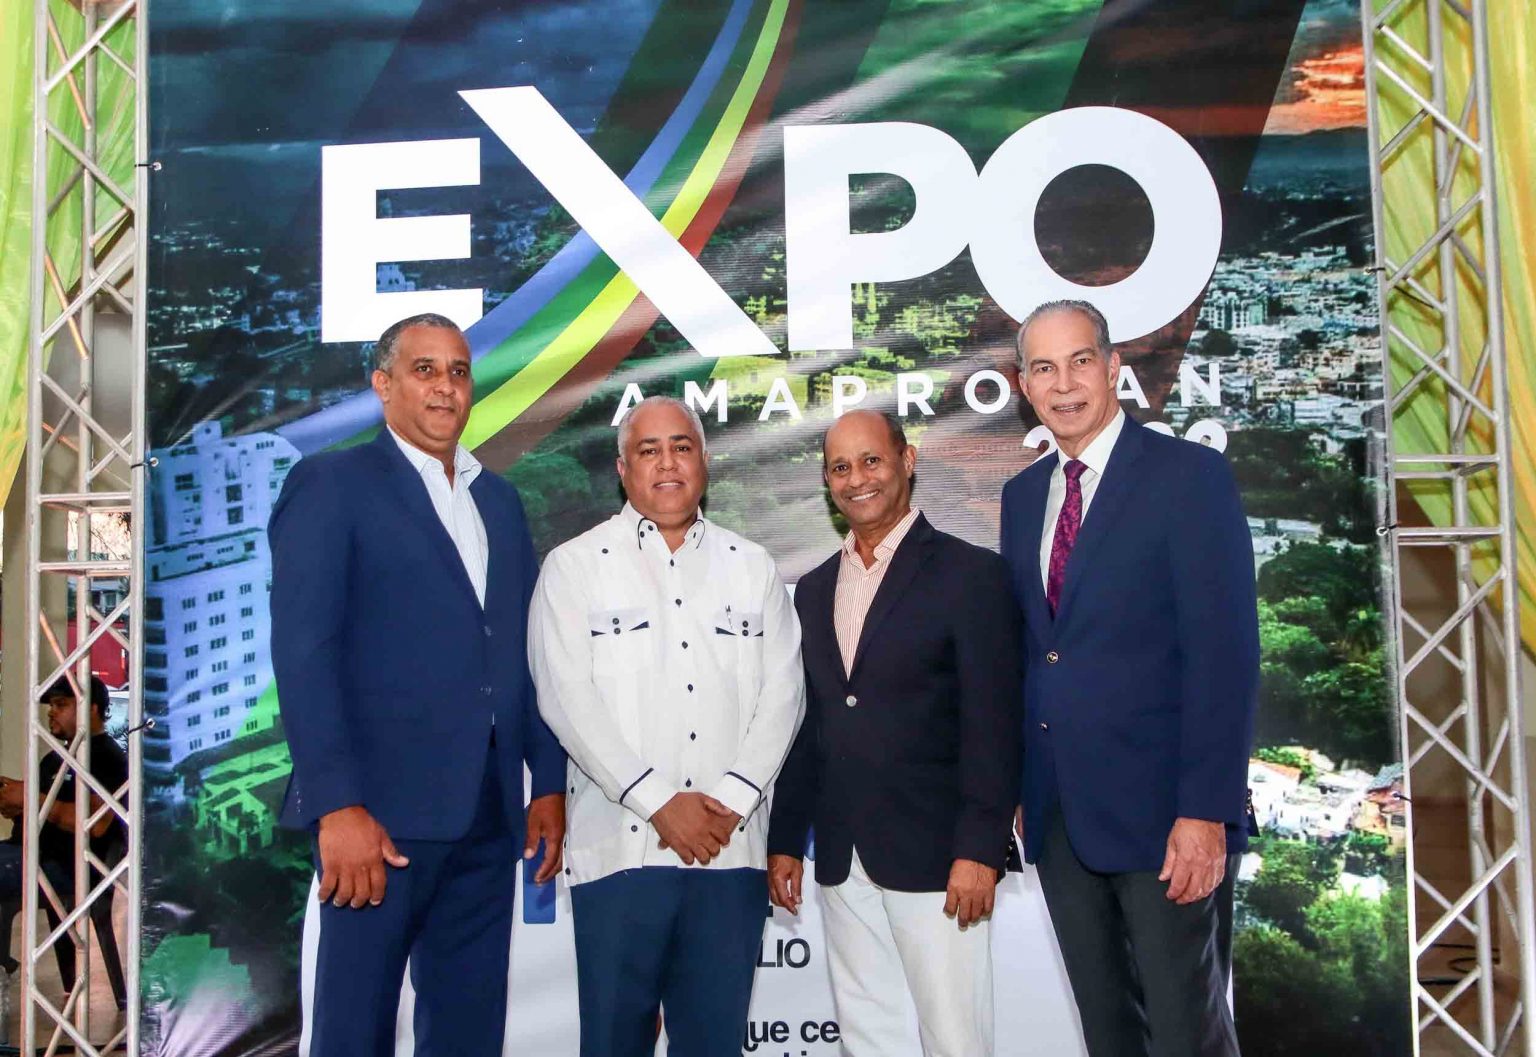 Expo AMAPROSAN 2022 dinamizara el comercio regional